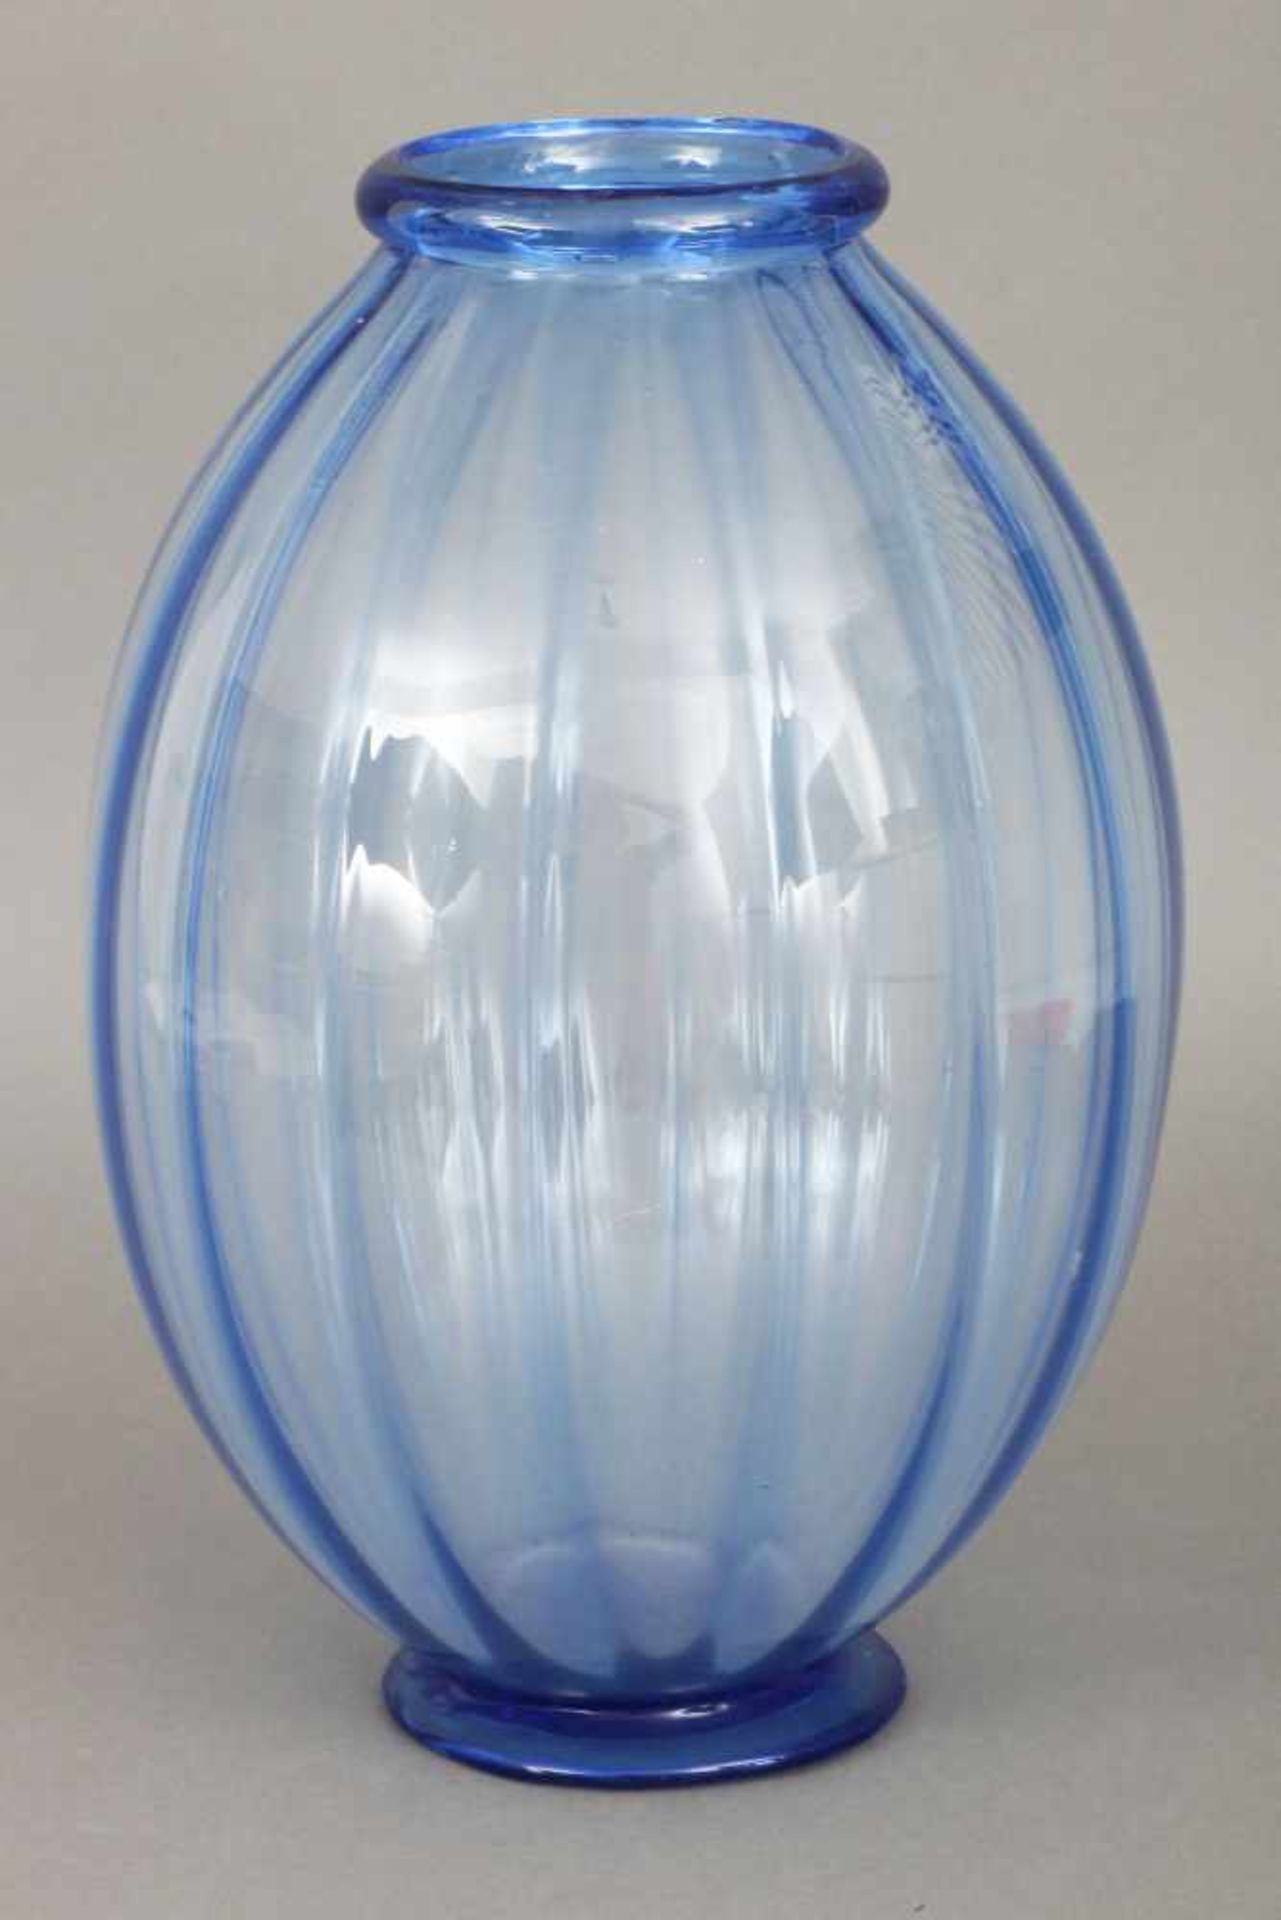 MURANO Glasvaseblaues Glas, wohl um 1930, ovoider Korpus, runder Lippenrand, gefächerte Wandung,